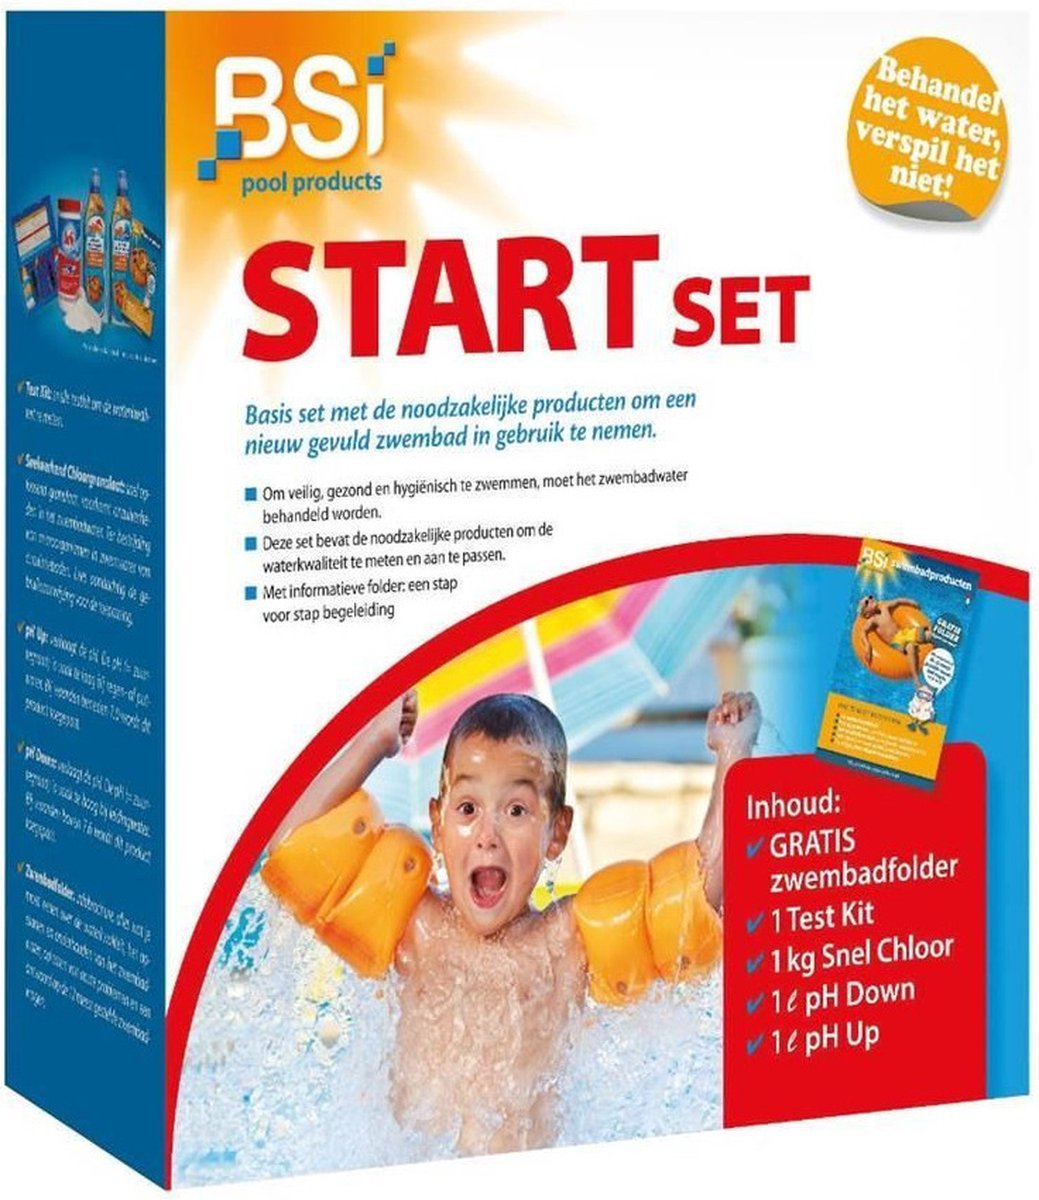 BSI - Start Set - Zwembad - Spa - Basisset die alle producten bevat om het water van een nieuw gevuld zwembad in gebruik te nemen